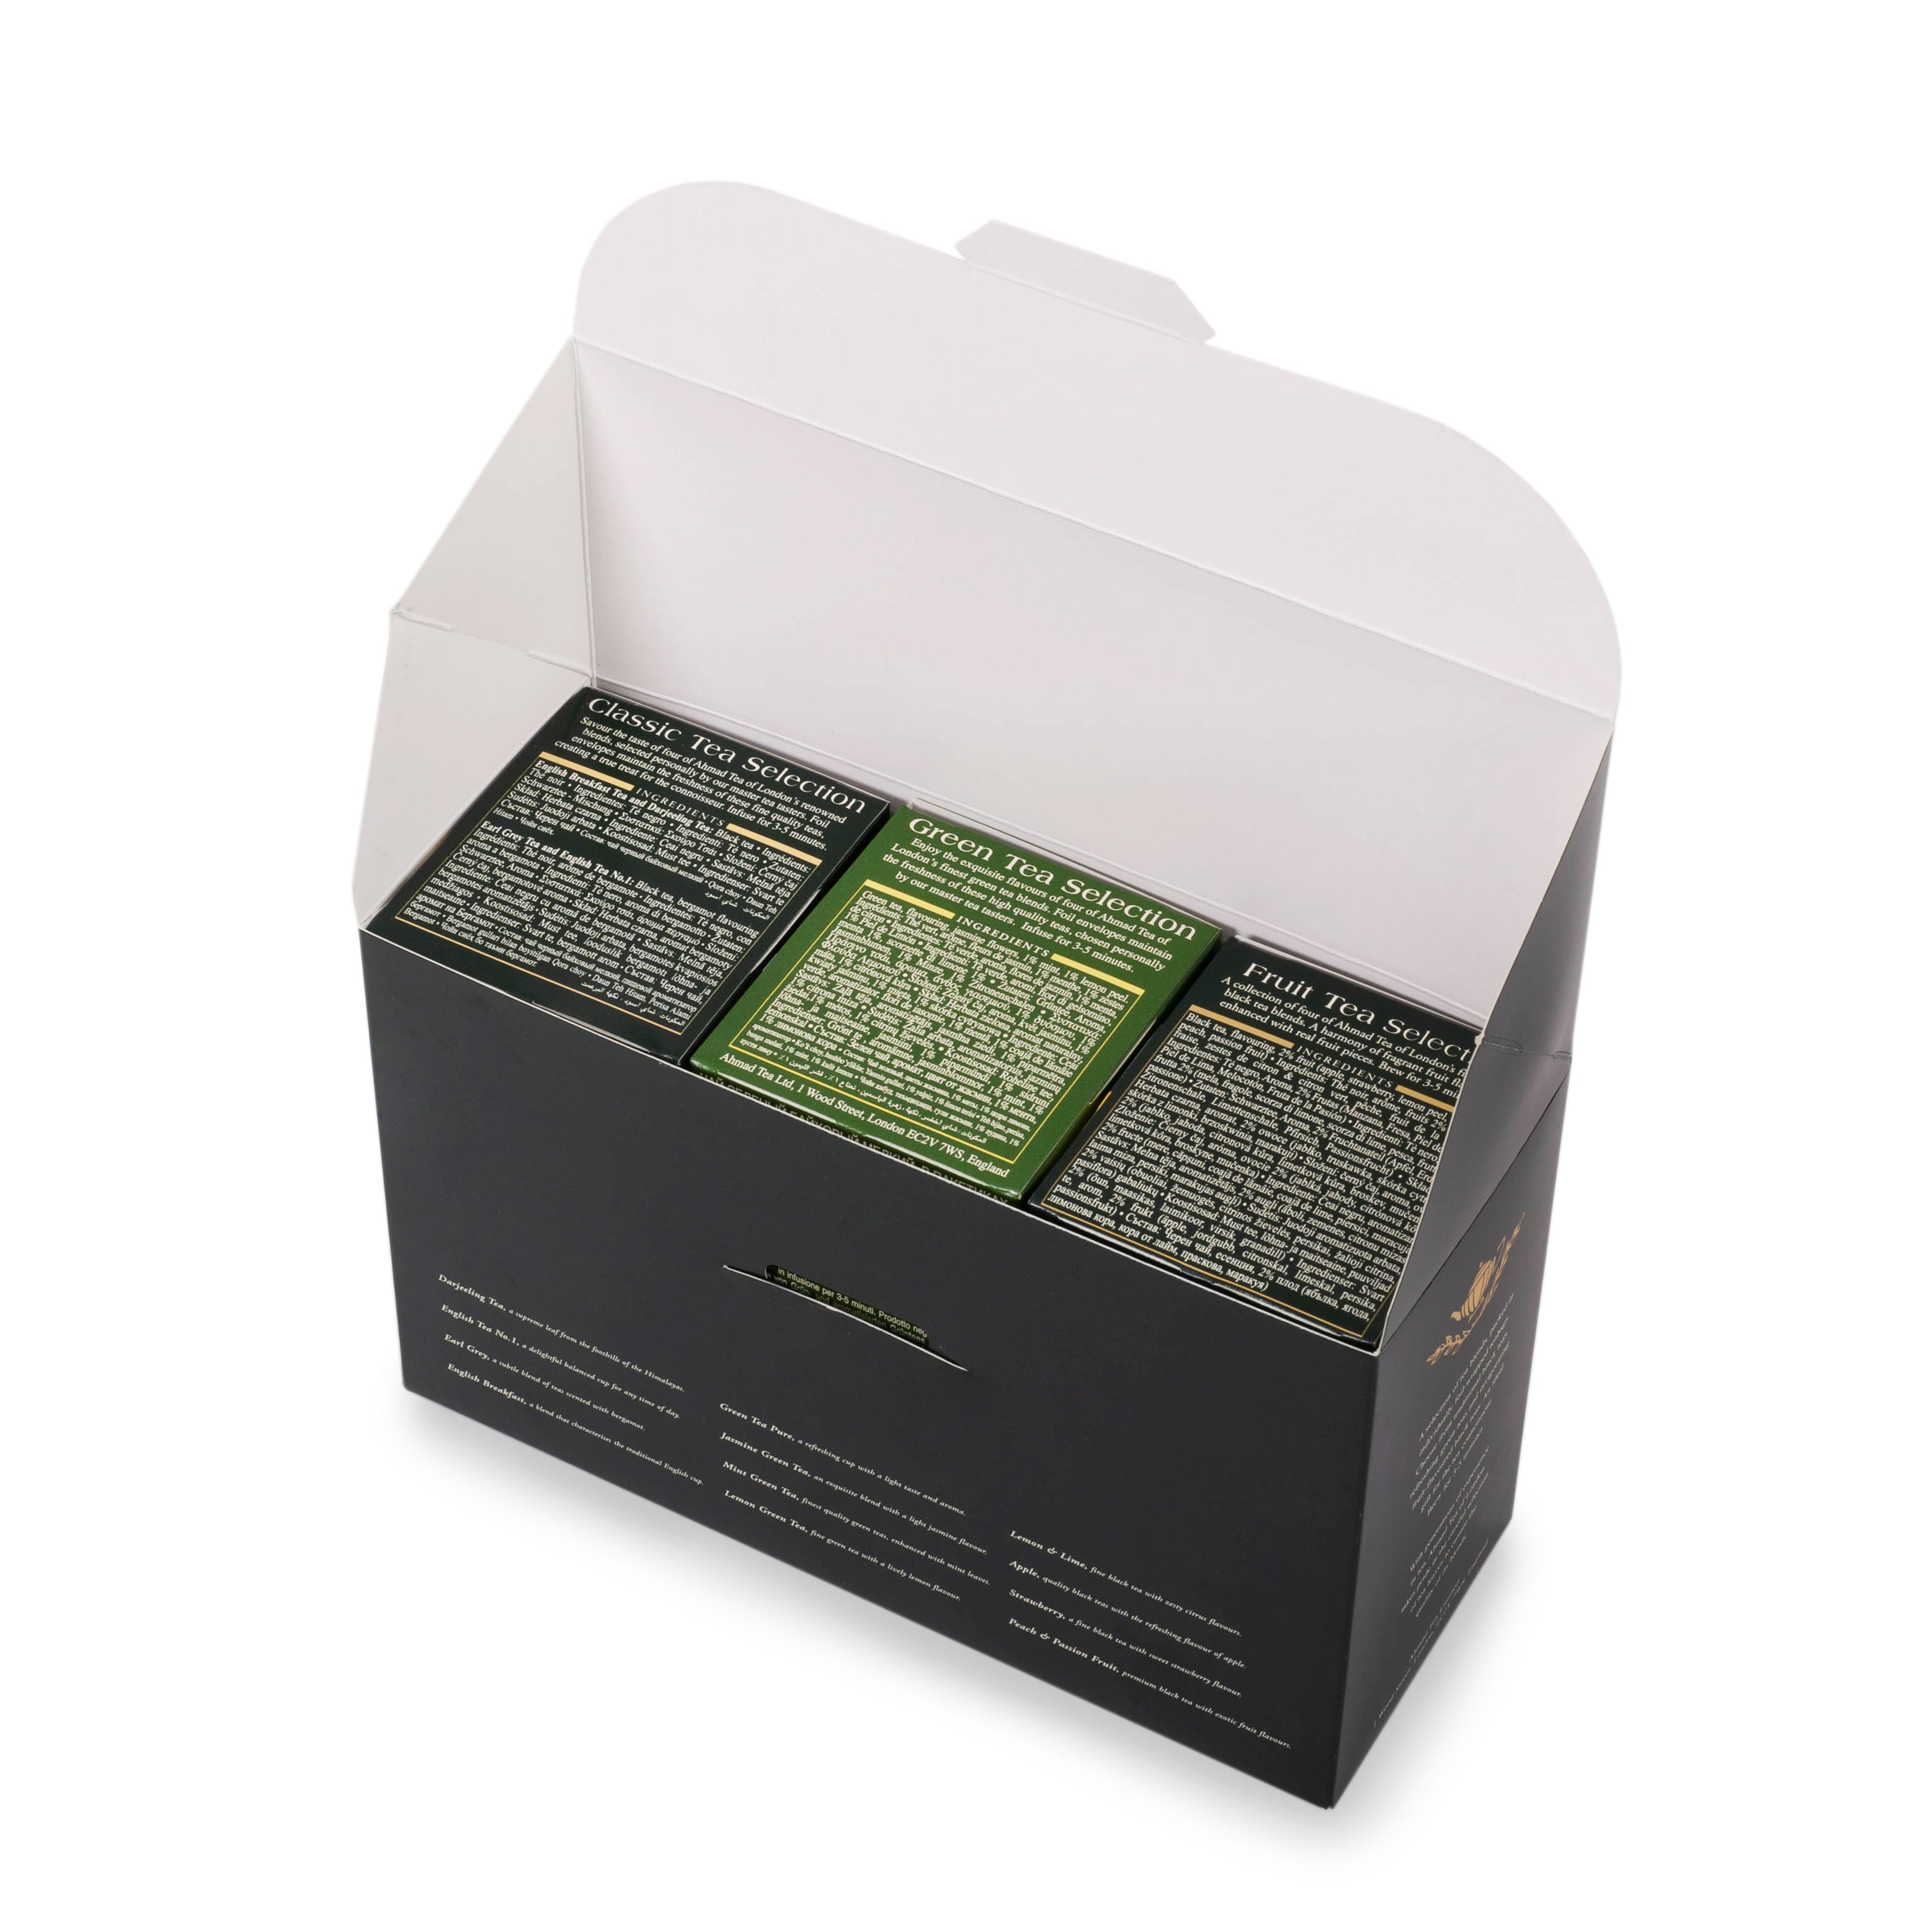 Twelve Teas Selection | Selezione di tè: tè nero e tè verde assortiti | Ahmad Tea | 60 bustine